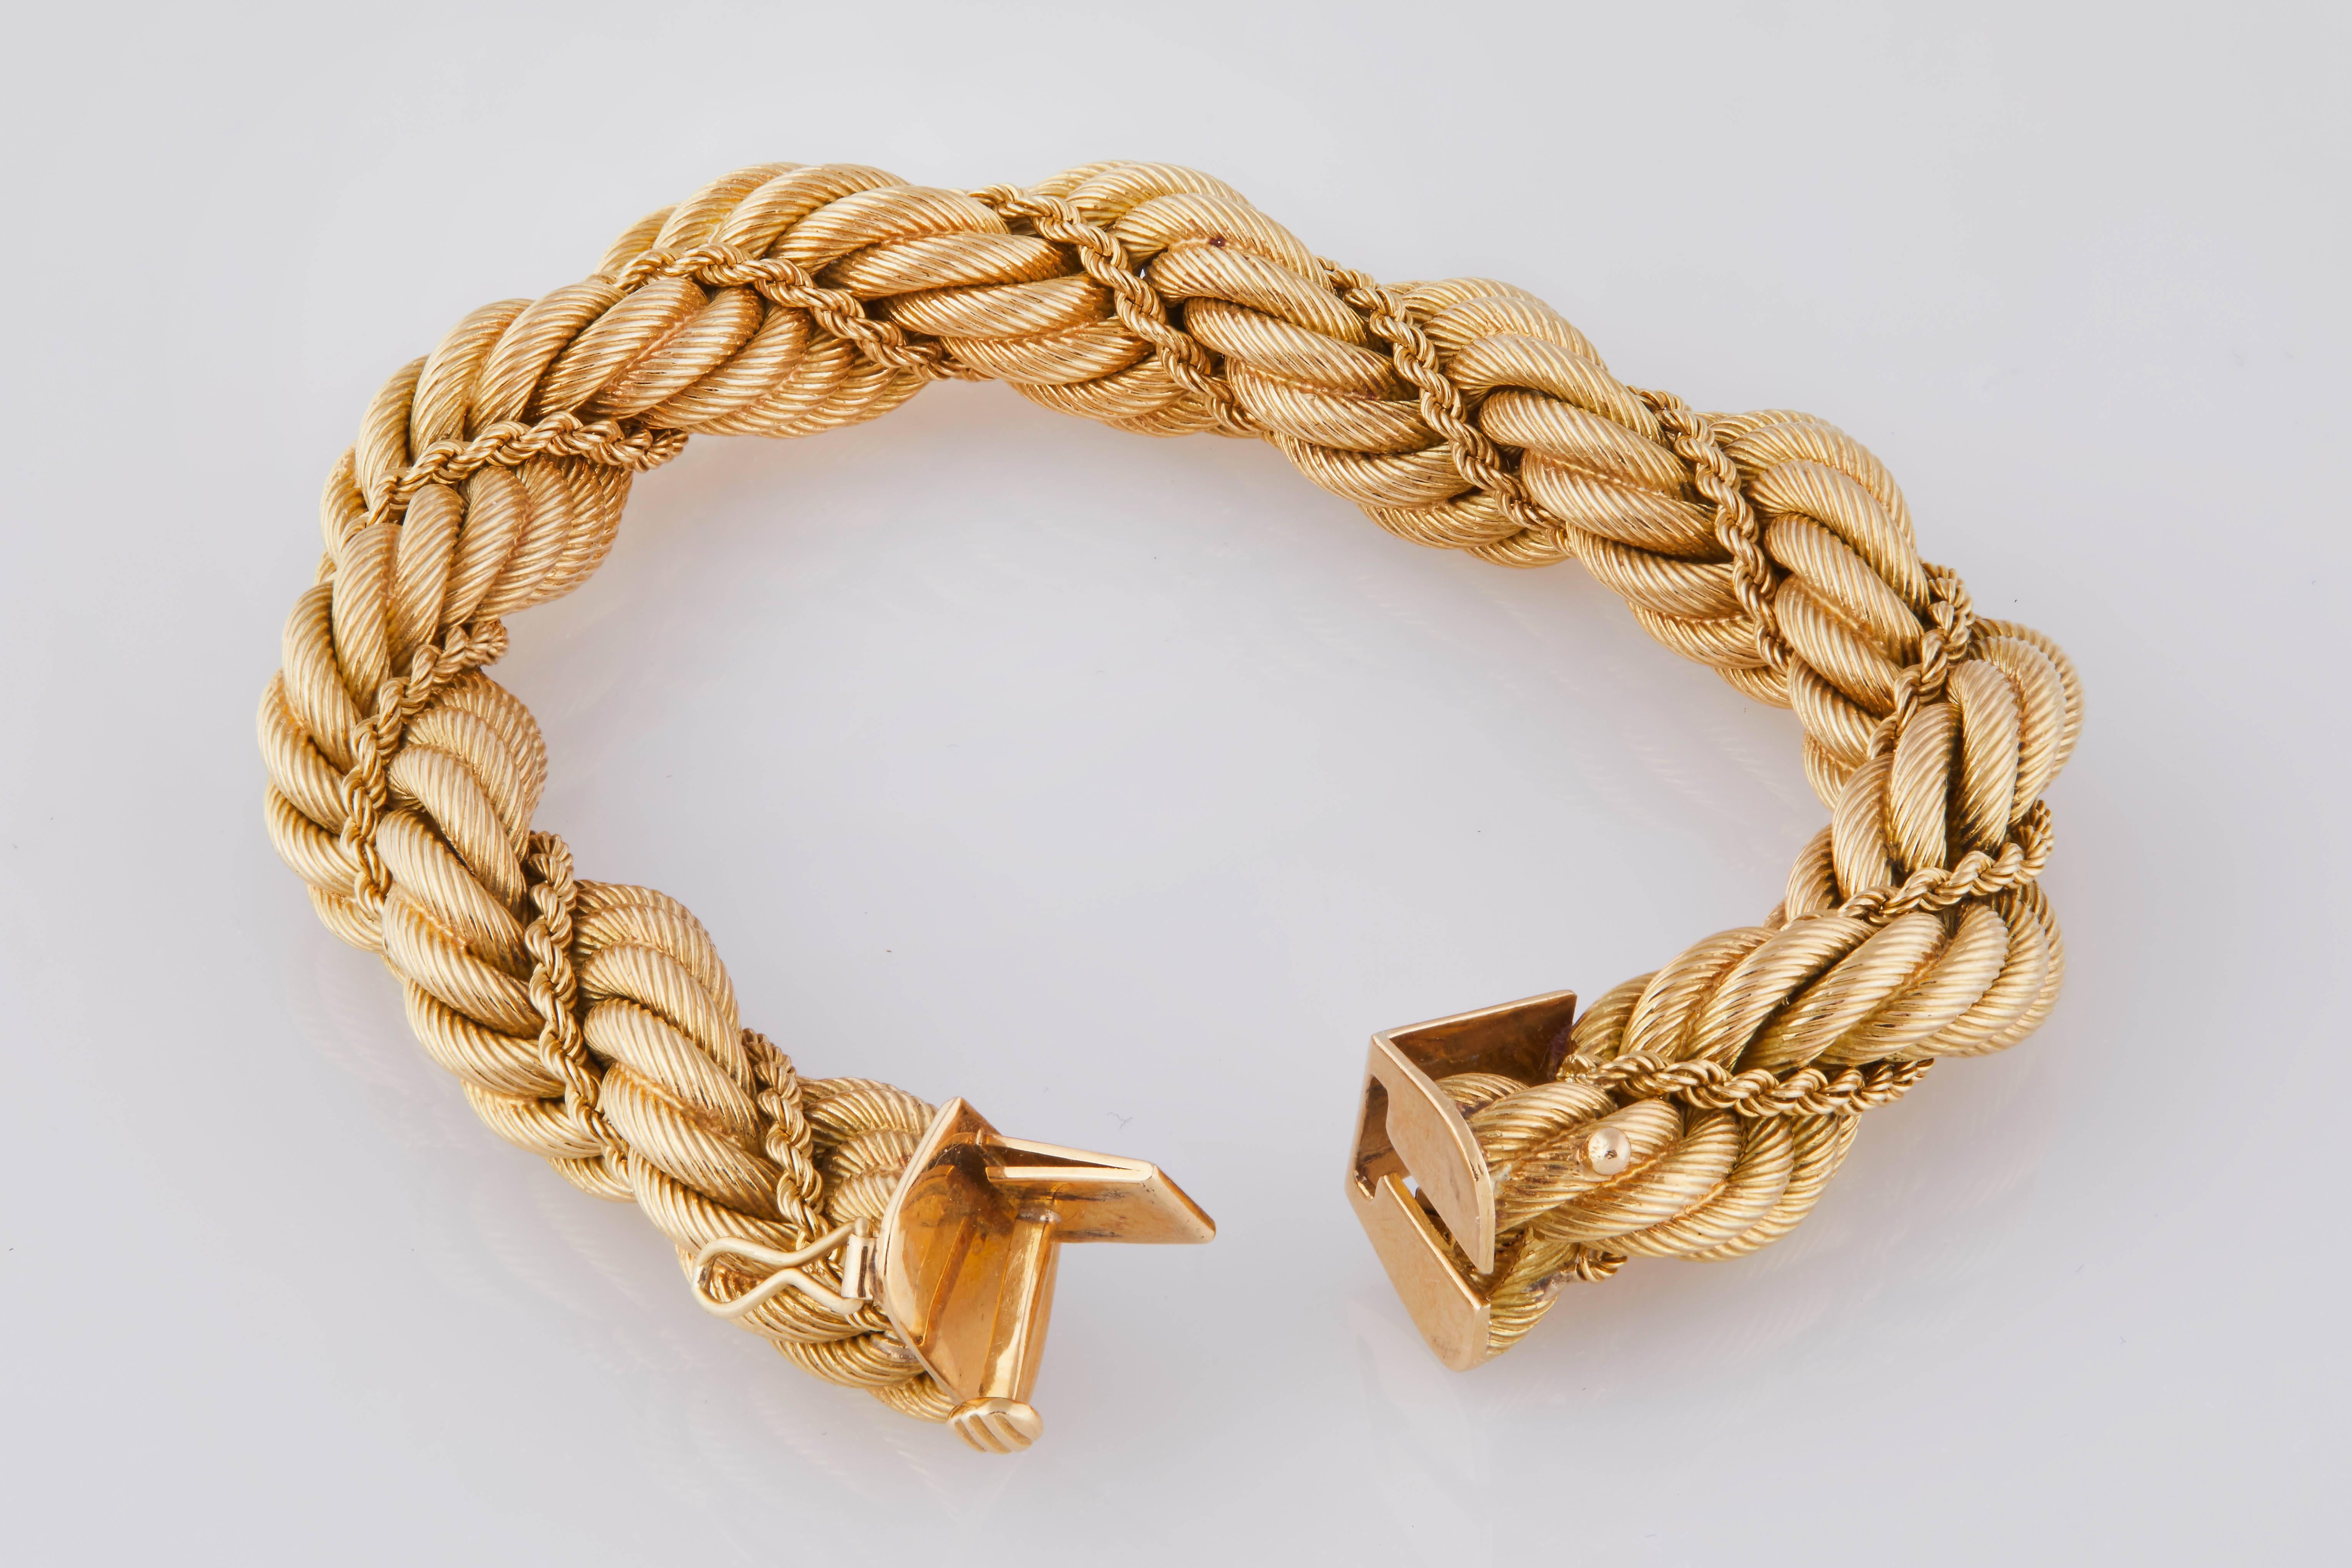 1960s 18k gold rope bracelet by Tiffany & Co. 